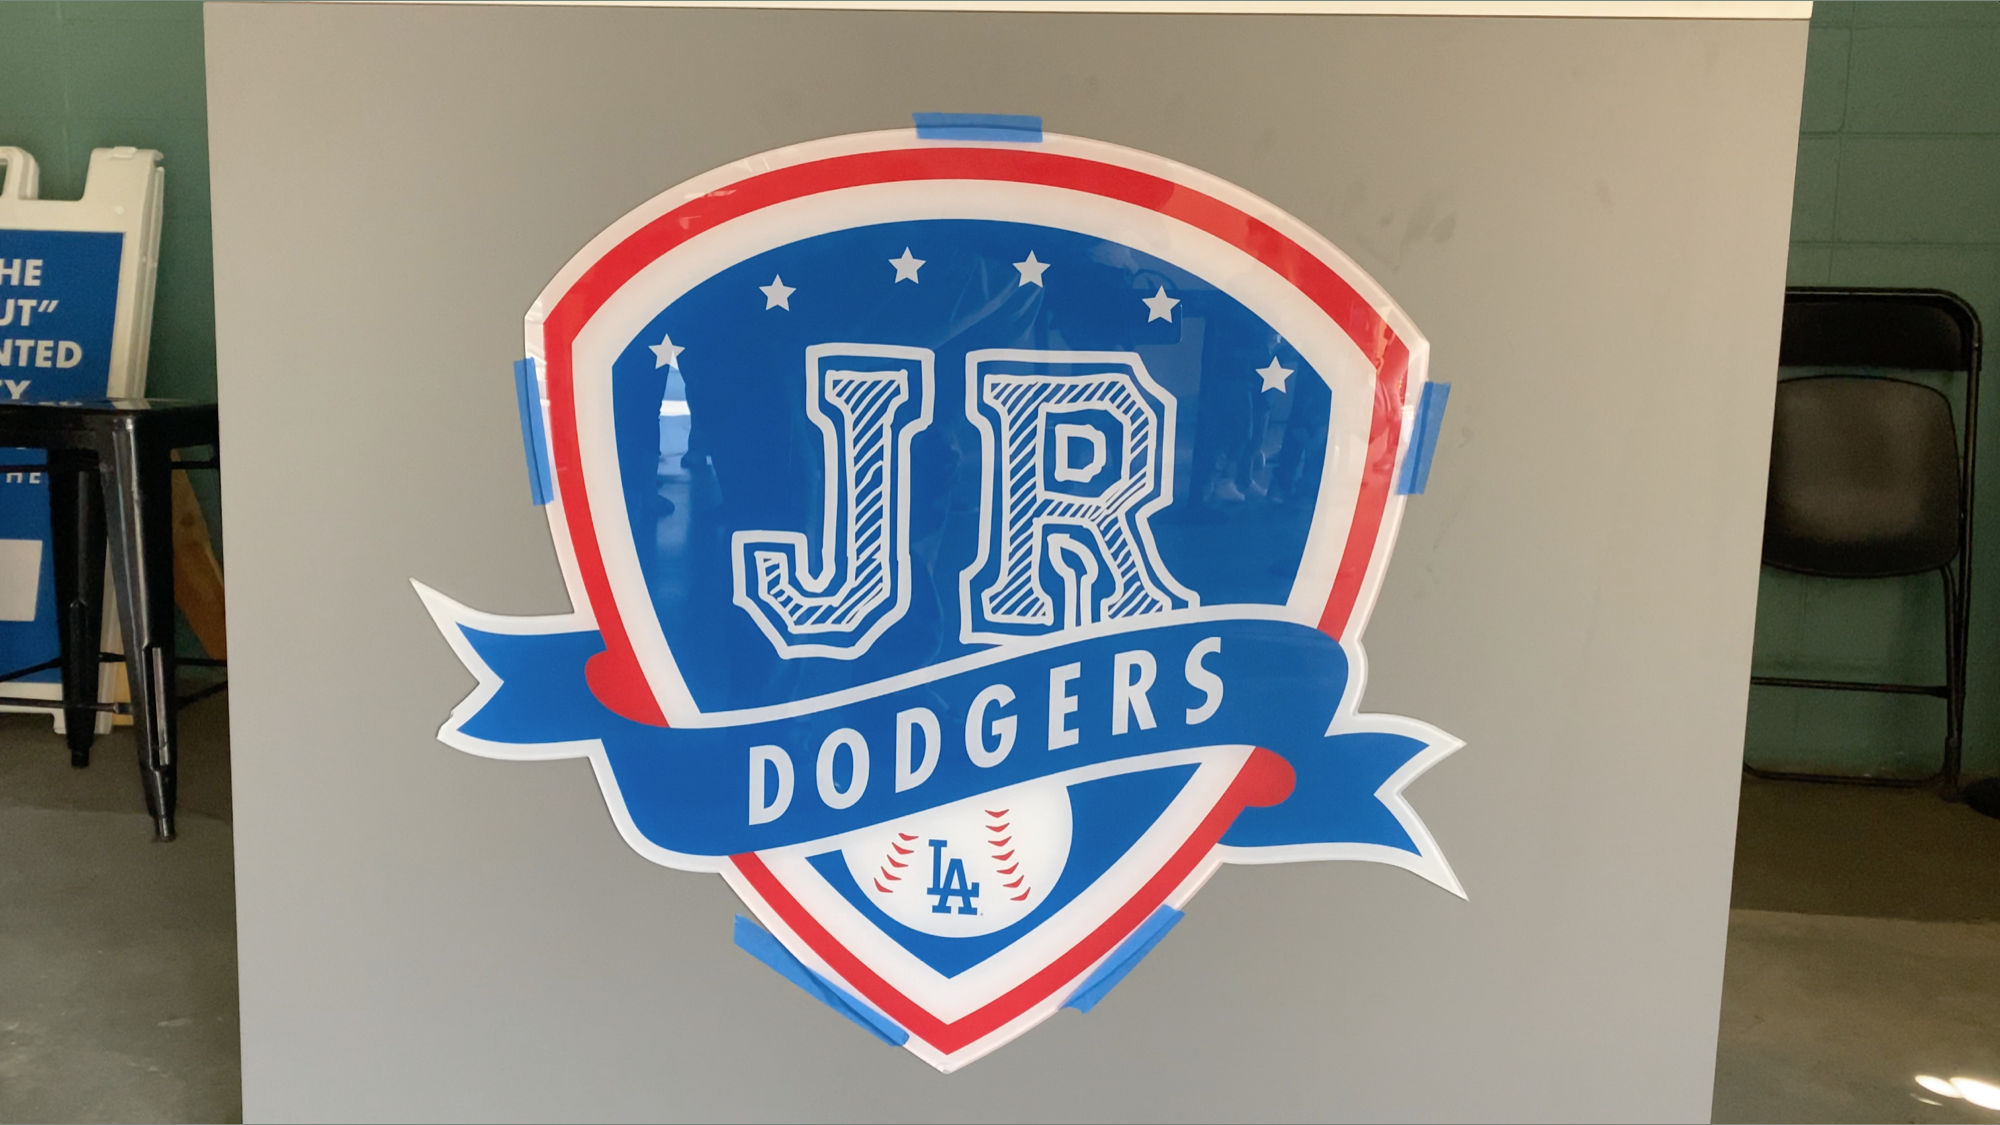 Dodger Stadium Junior Dodgers